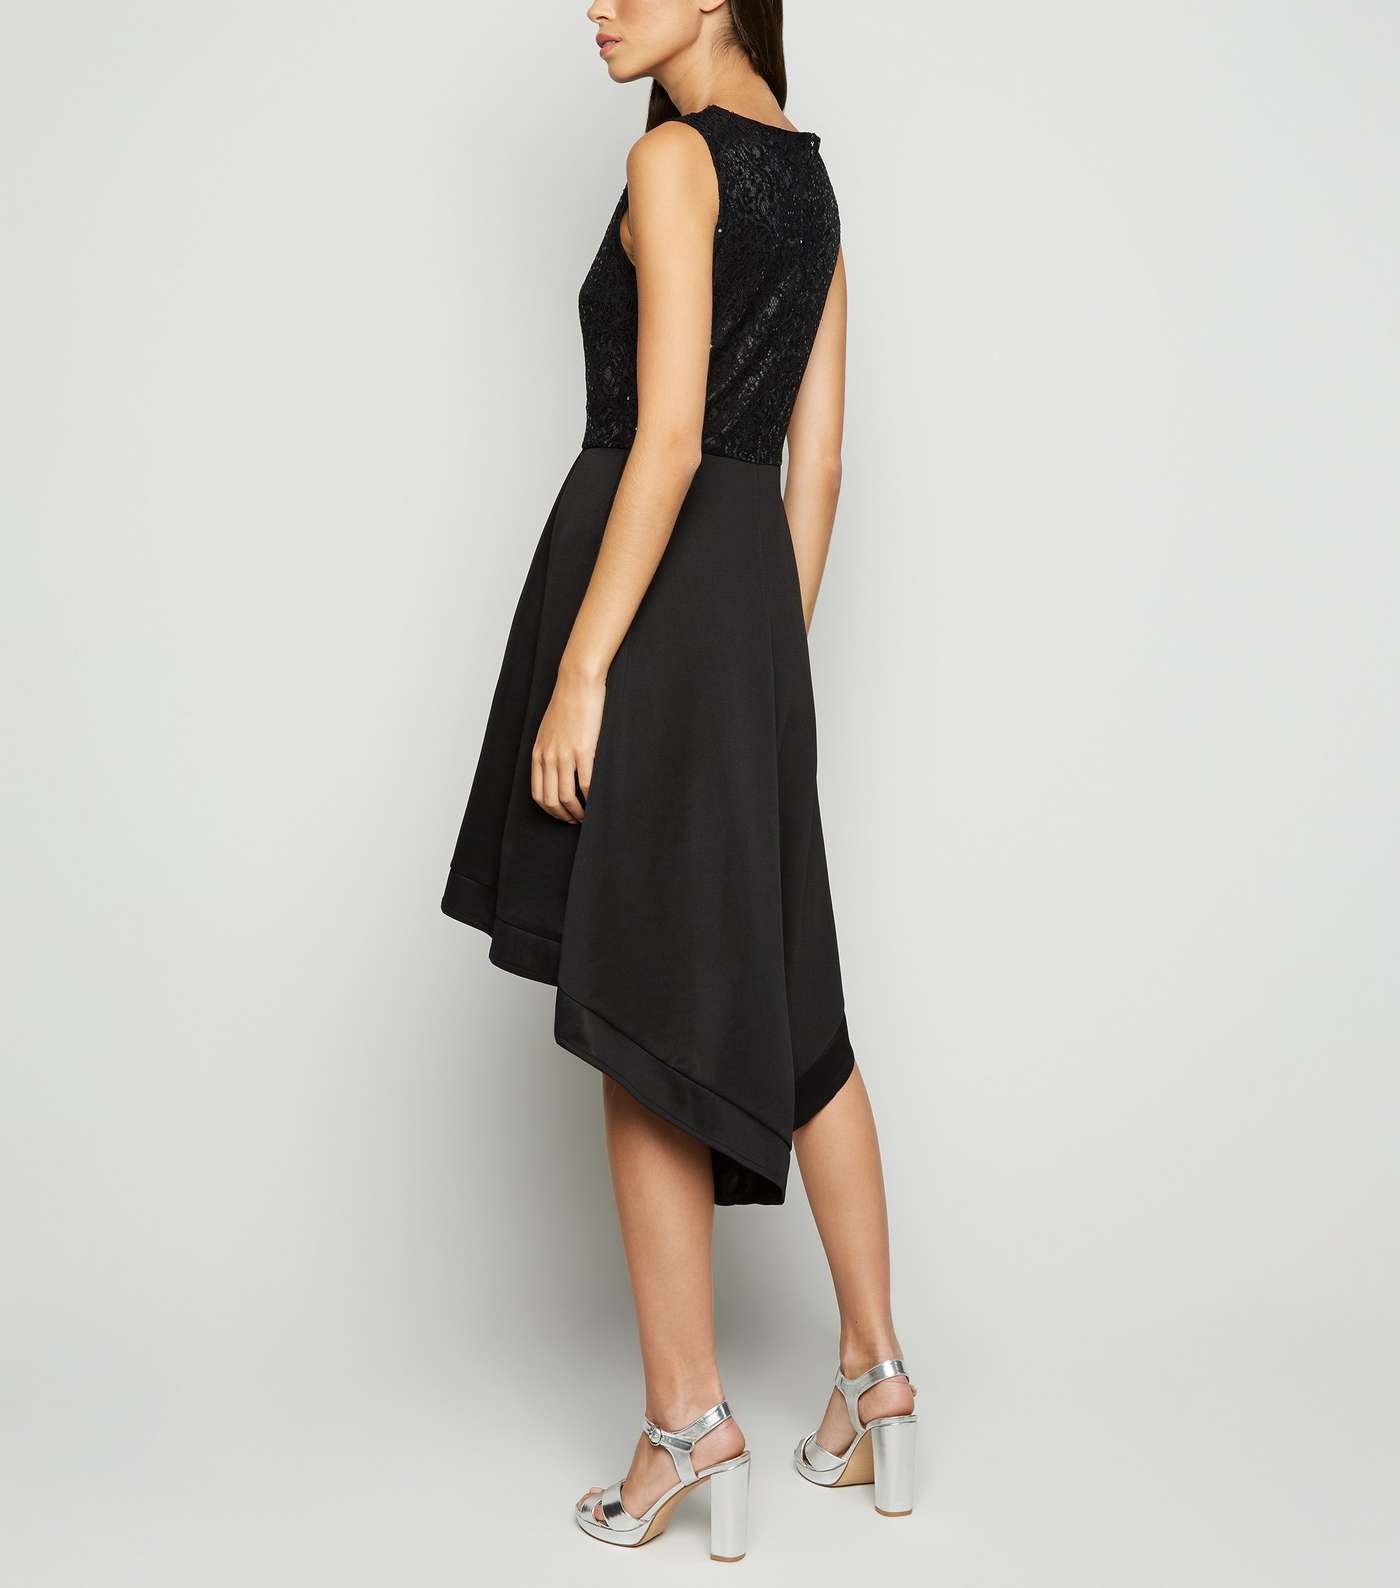 Mela Black Lace Sequin Dip Hem Dress Image 3